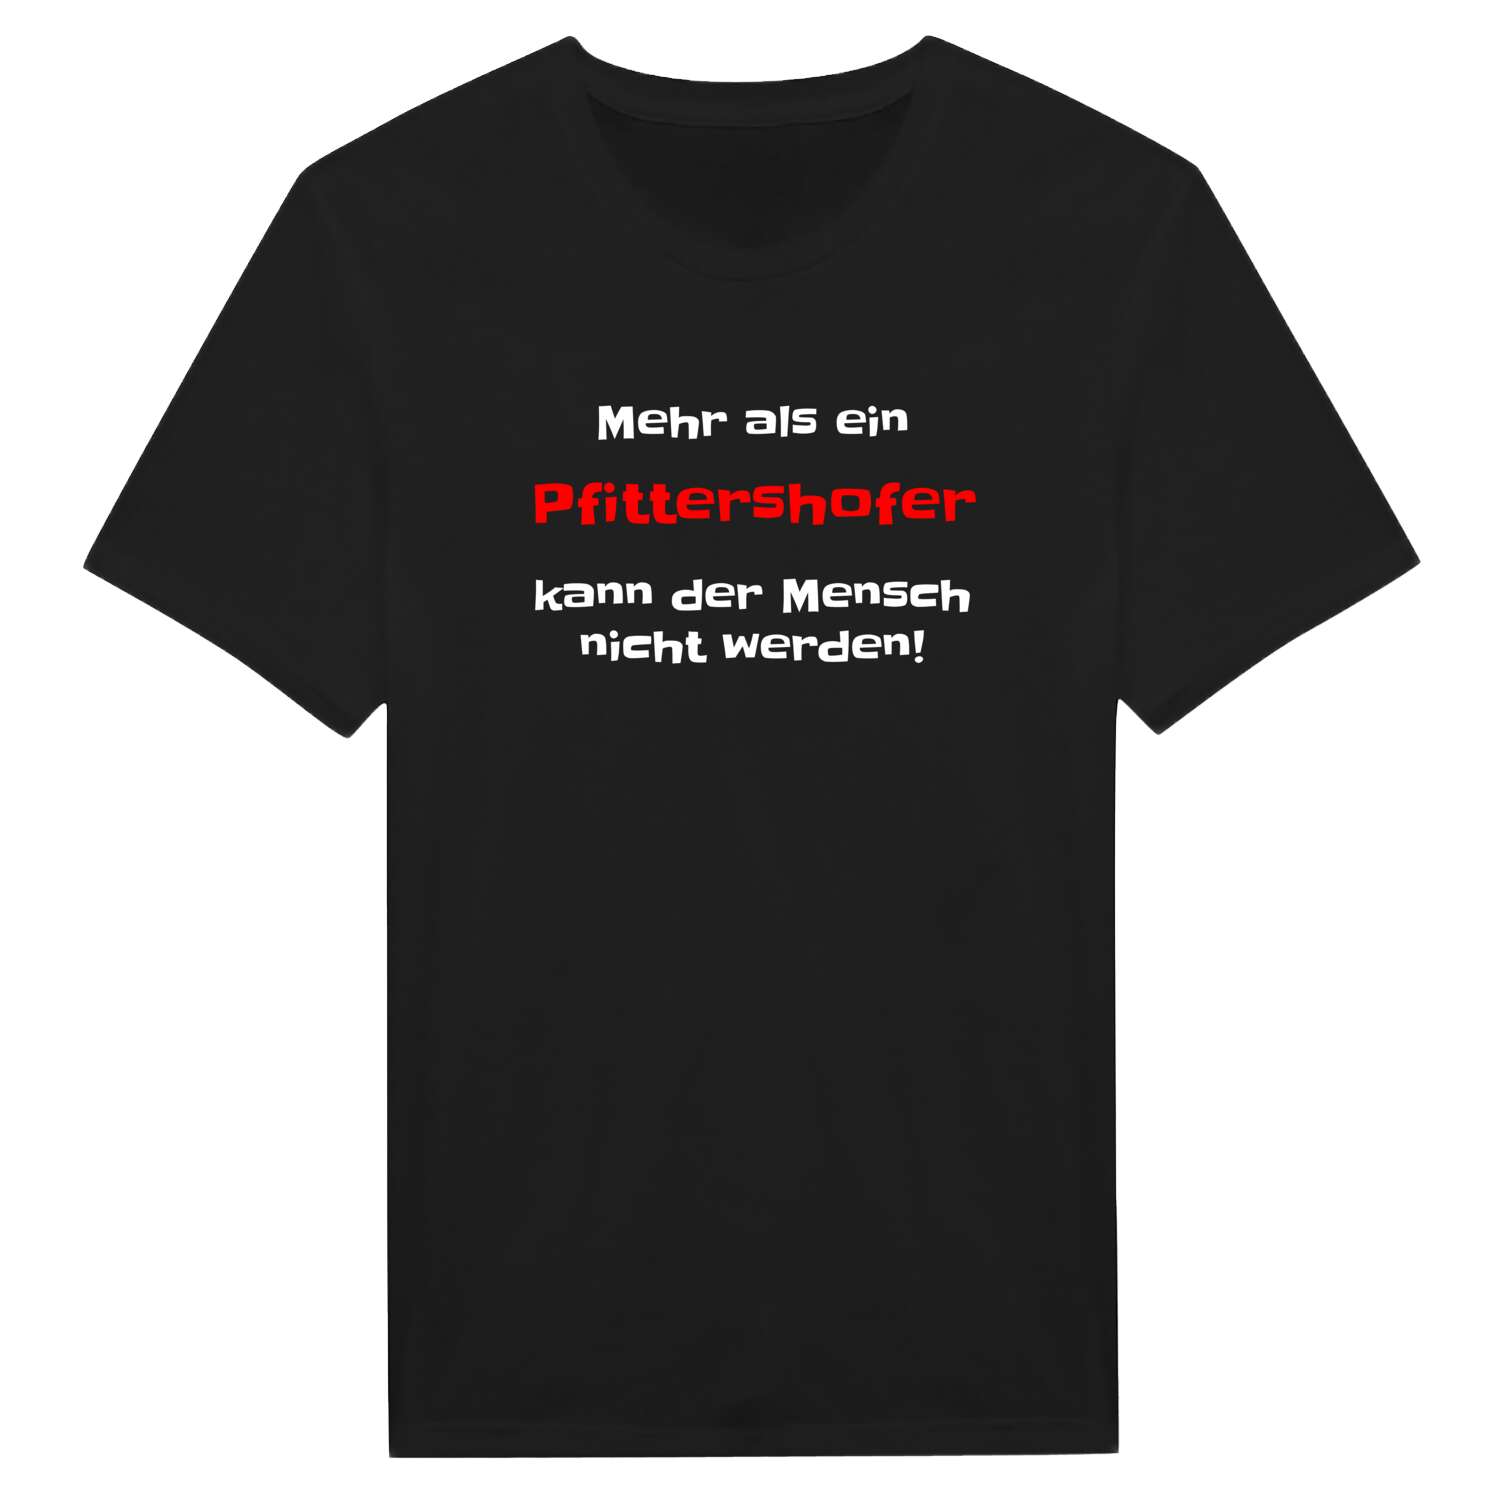 Pfittershof T-Shirt »Mehr als ein«